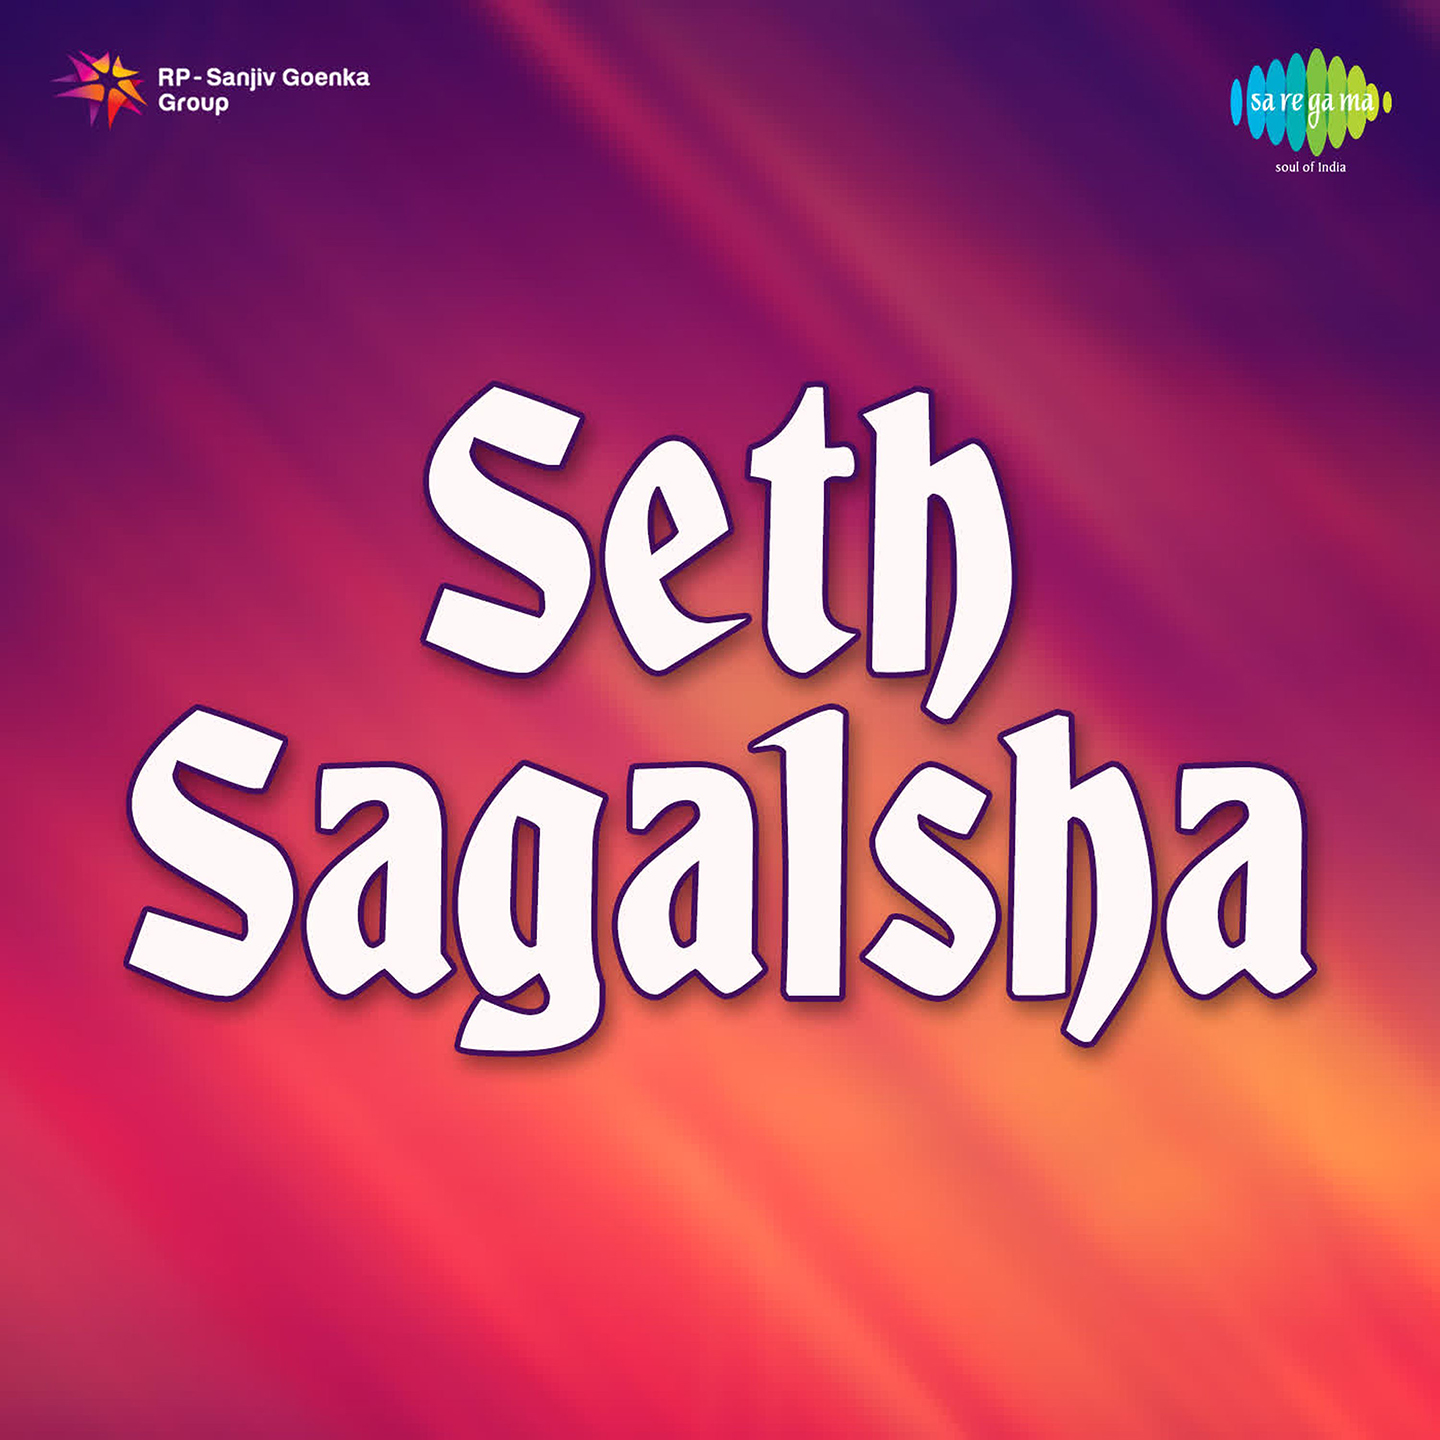 Seth Sagalsha